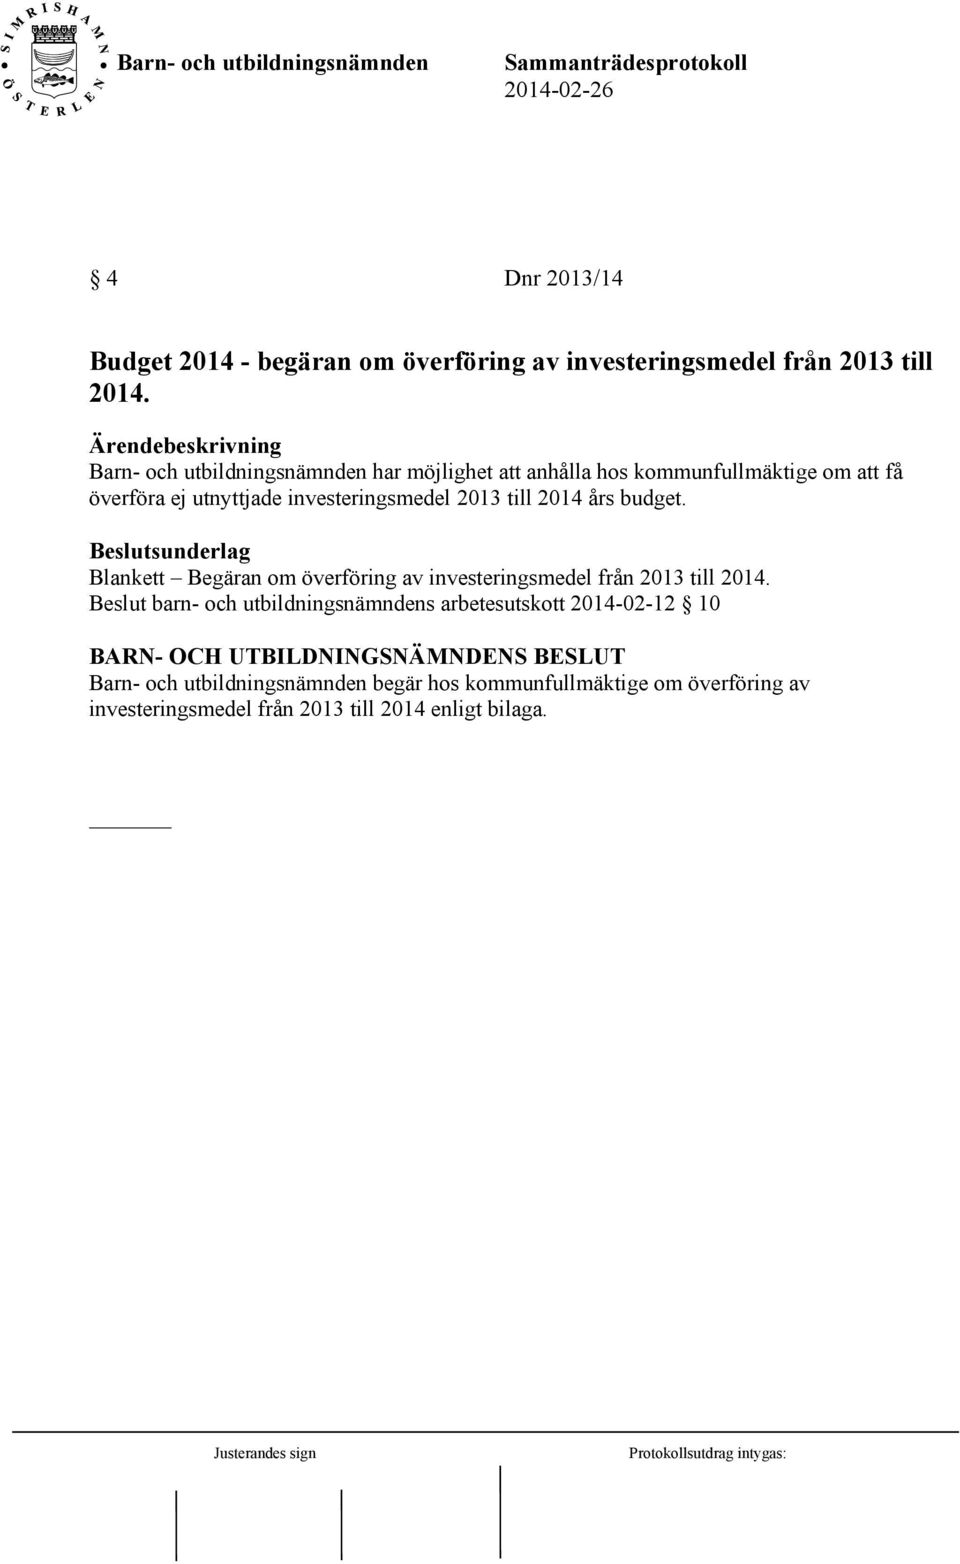 2013 till 2014 års budget. Blankett Begäran om överföring av investeringsmedel från 2013 till 2014.